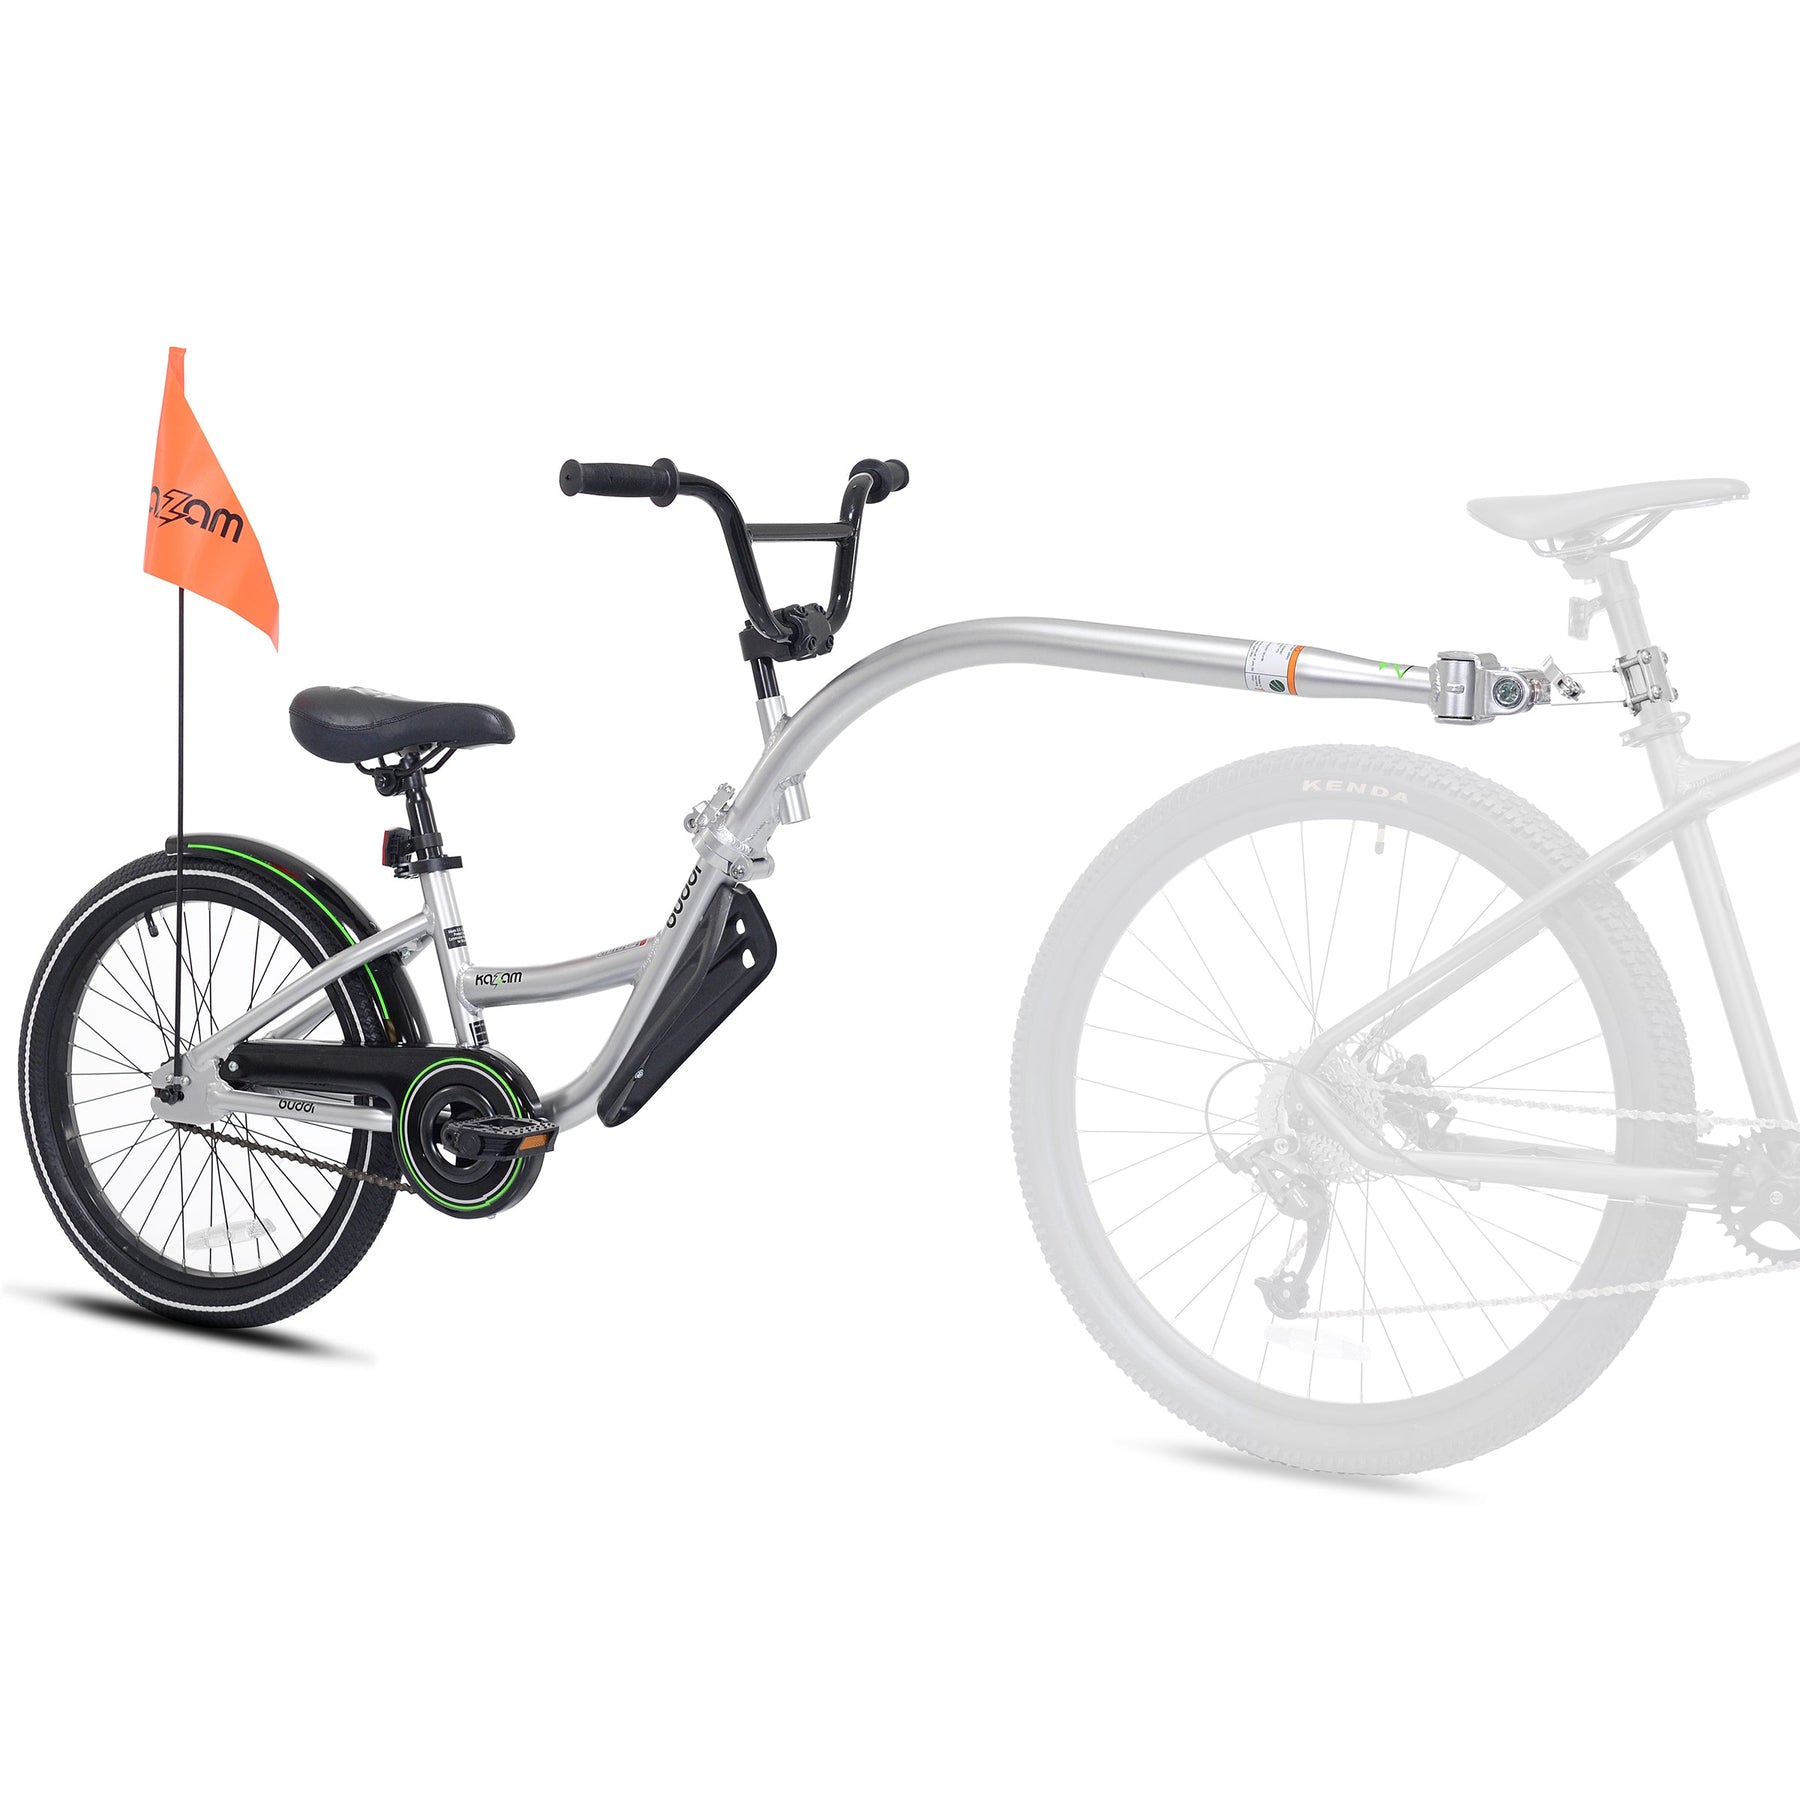 20" Kazam Buddi | Aluminum Trailer Bike For Kids Ages 6+